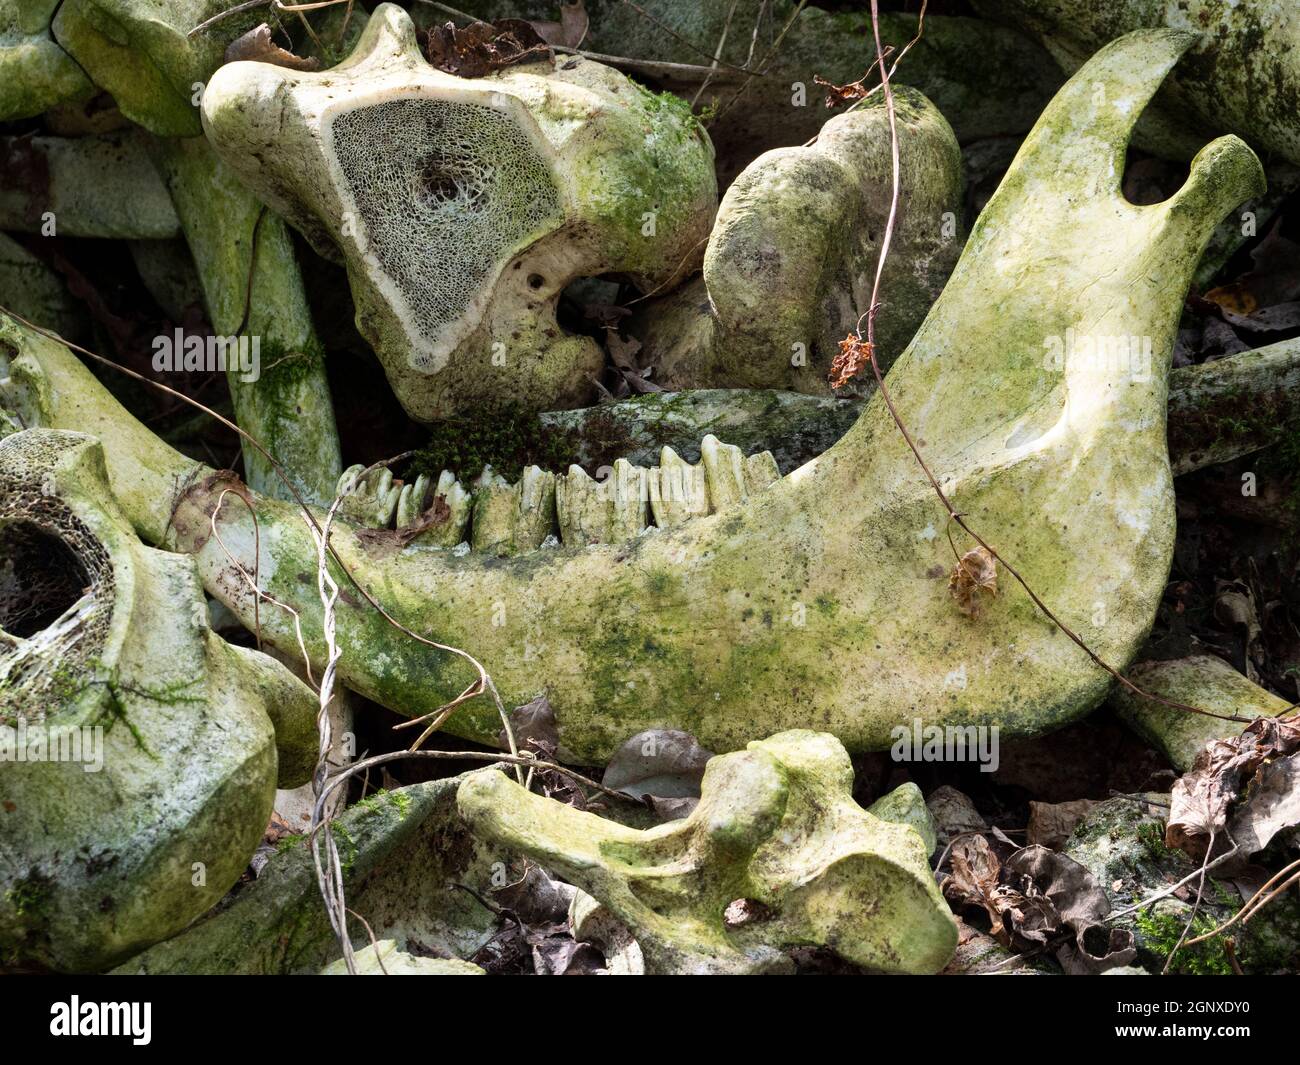 Primo piano di un osso della giawbone con denti e un femore tagliato di mucca o bestiame trovato in una foresta Foto Stock